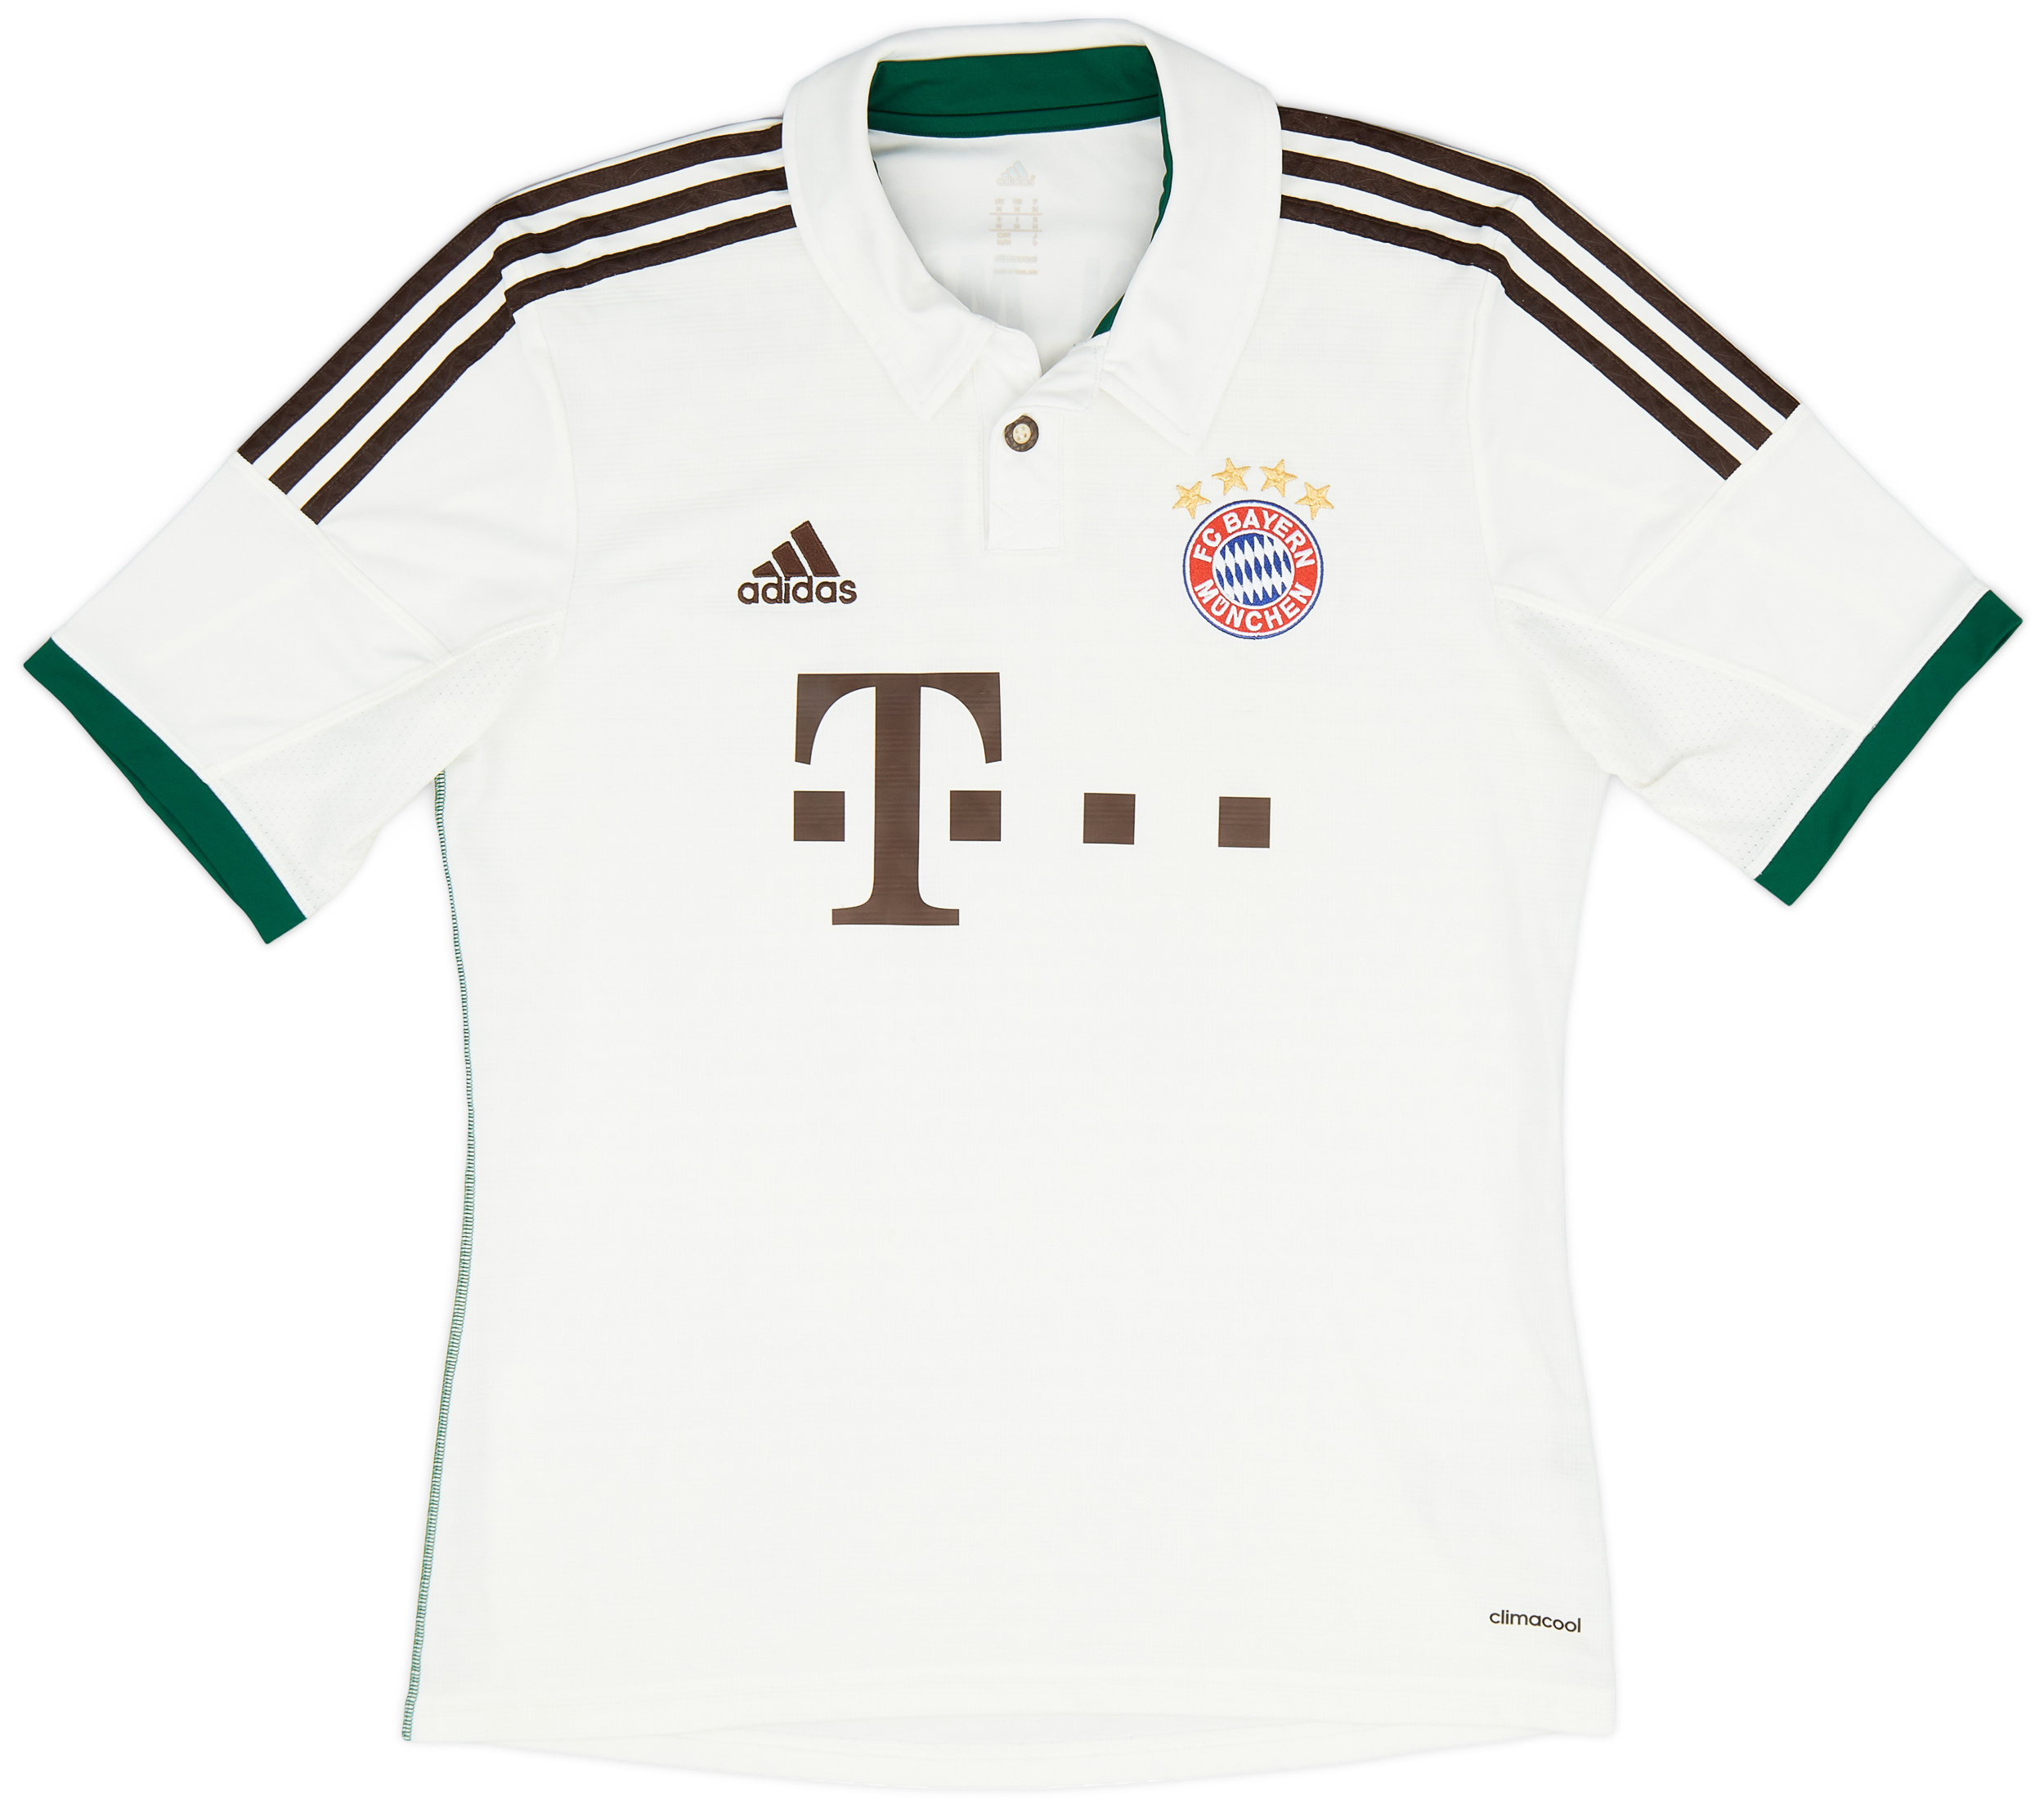 2013-14 Bayern Munich Away Shirt - 9/10 - ()